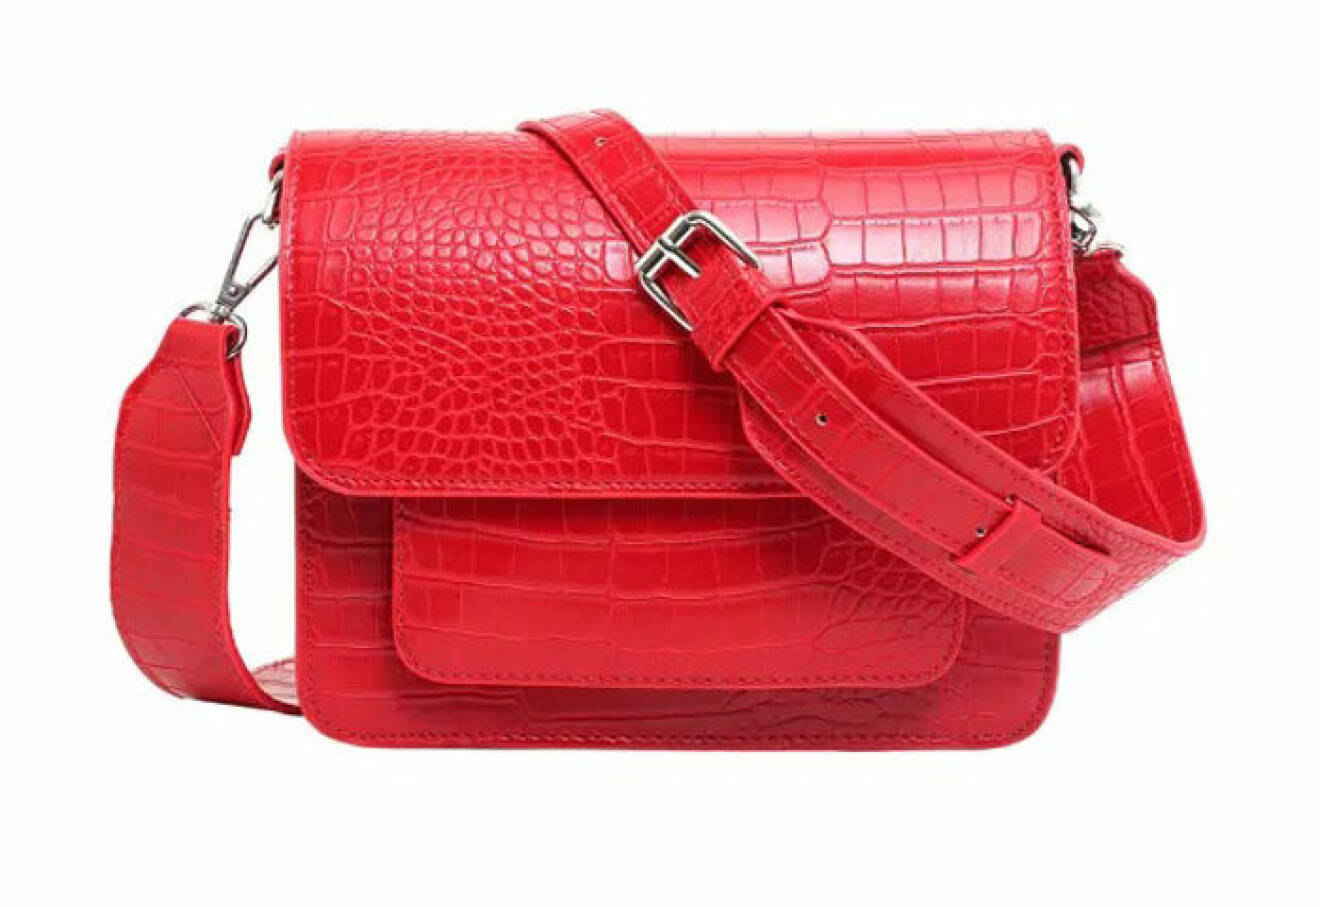 snygg outfit i rött och rosa – röd väska från Hvisk